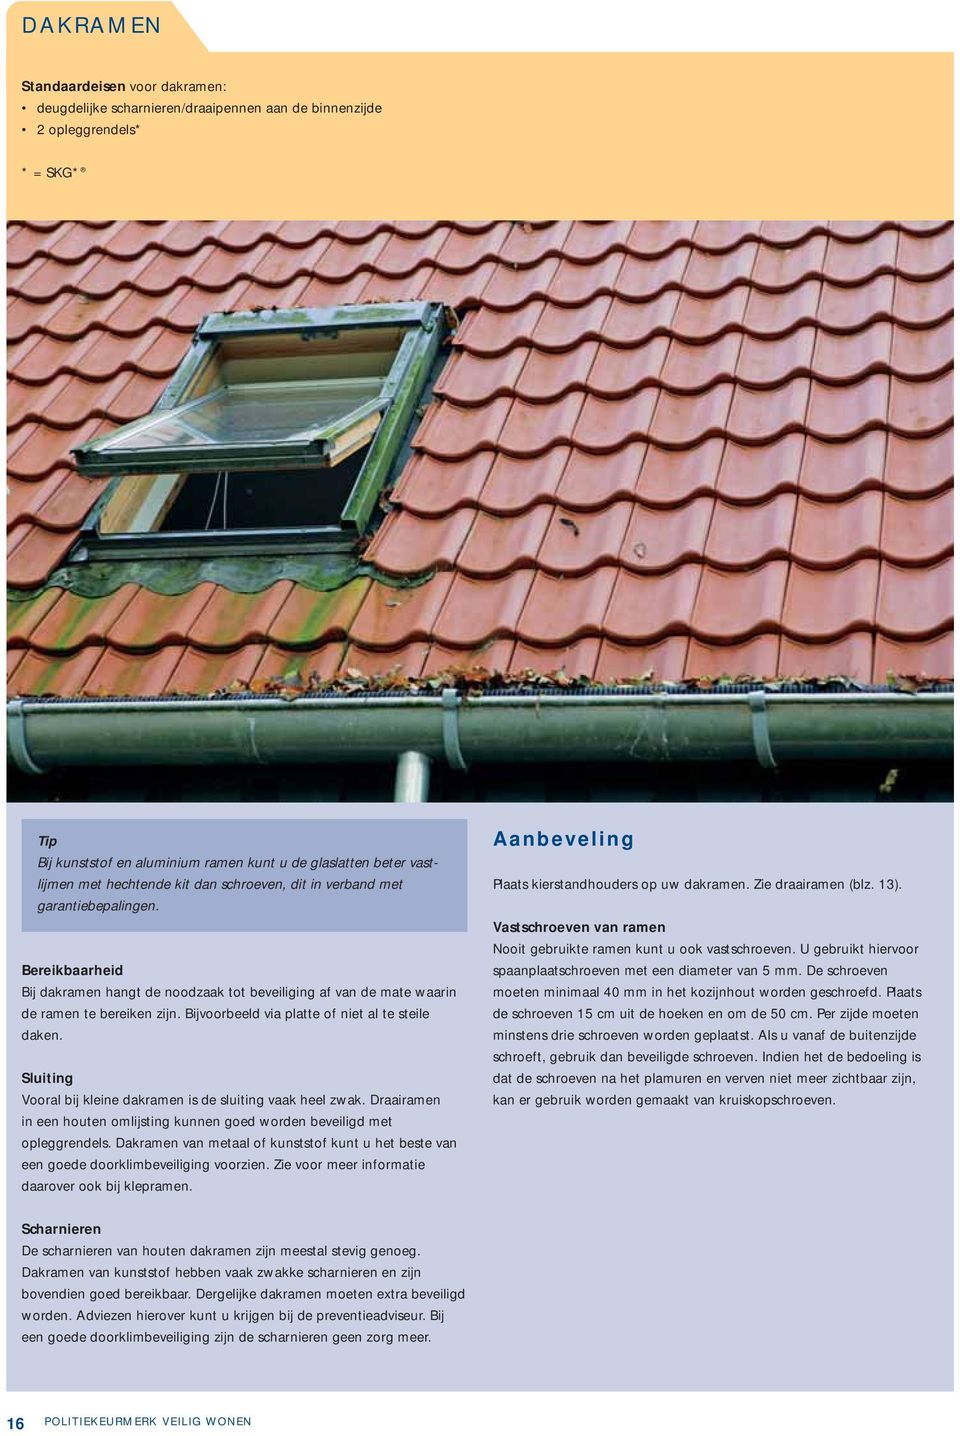 Bijvoorbeeld via platte of niet al te steile daken. Sluiting Vooral bij kleine dakramen is de sluiting vaak heel zwak.